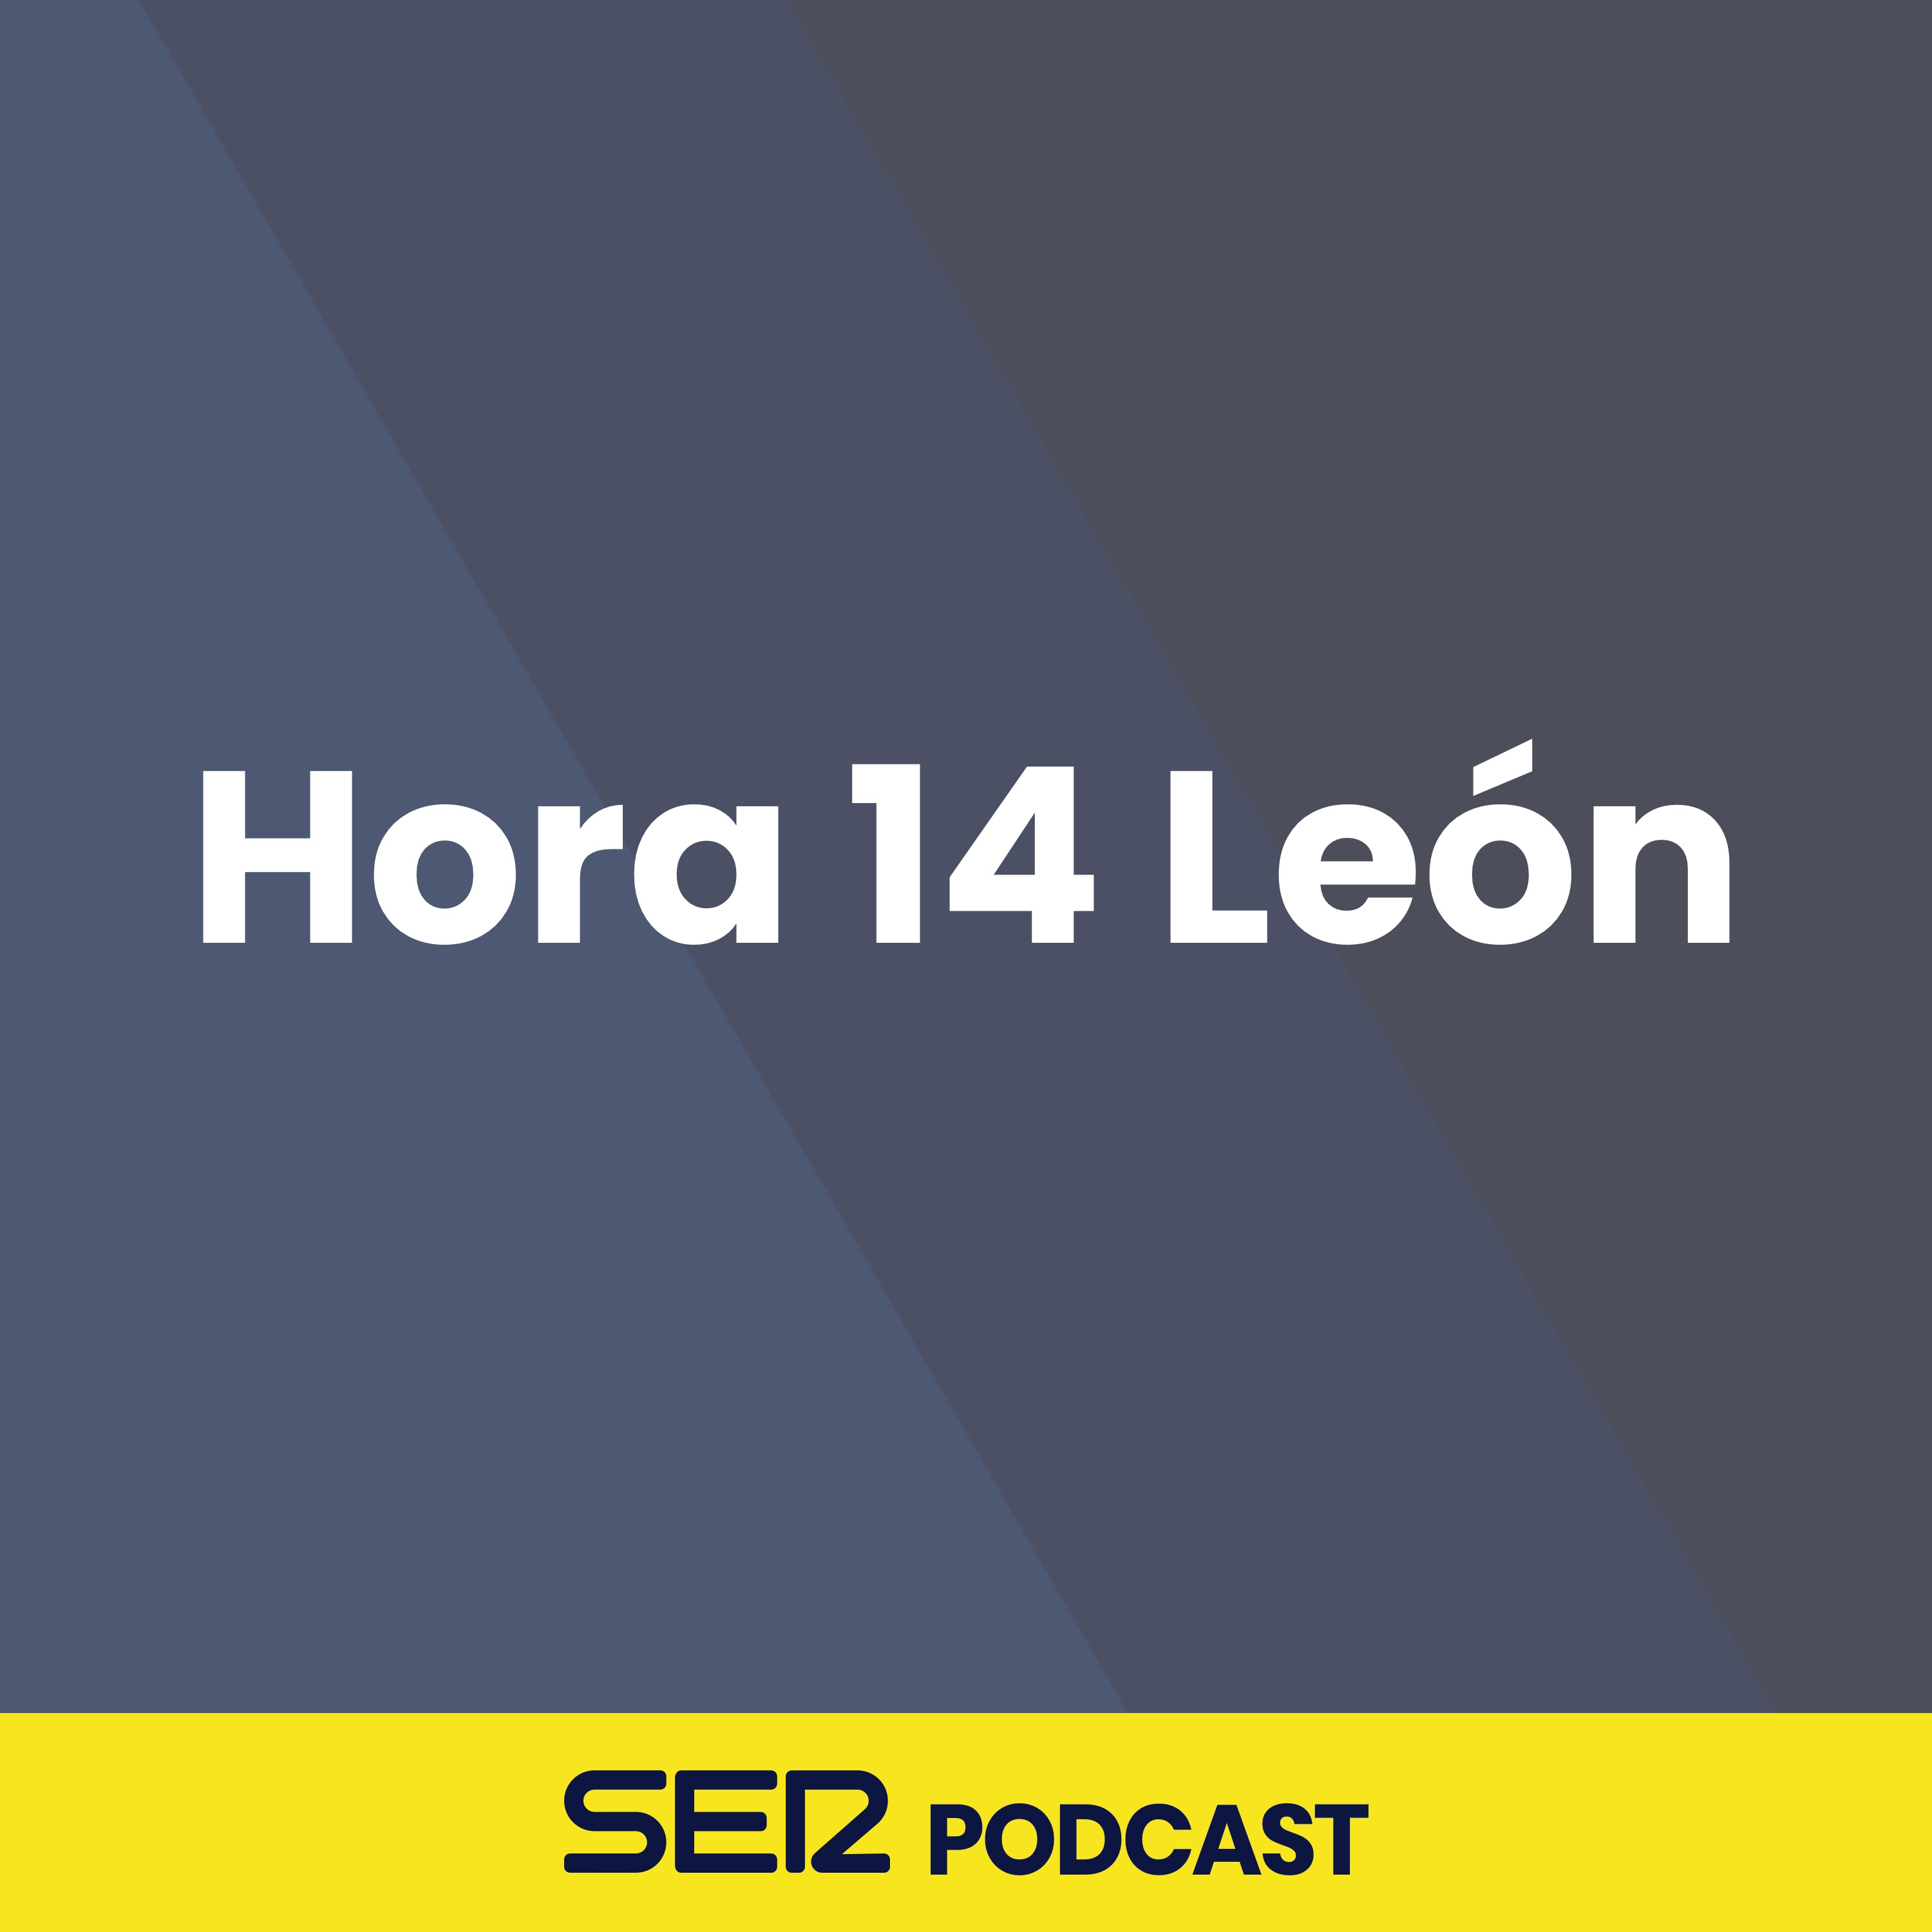 Hora 14 León